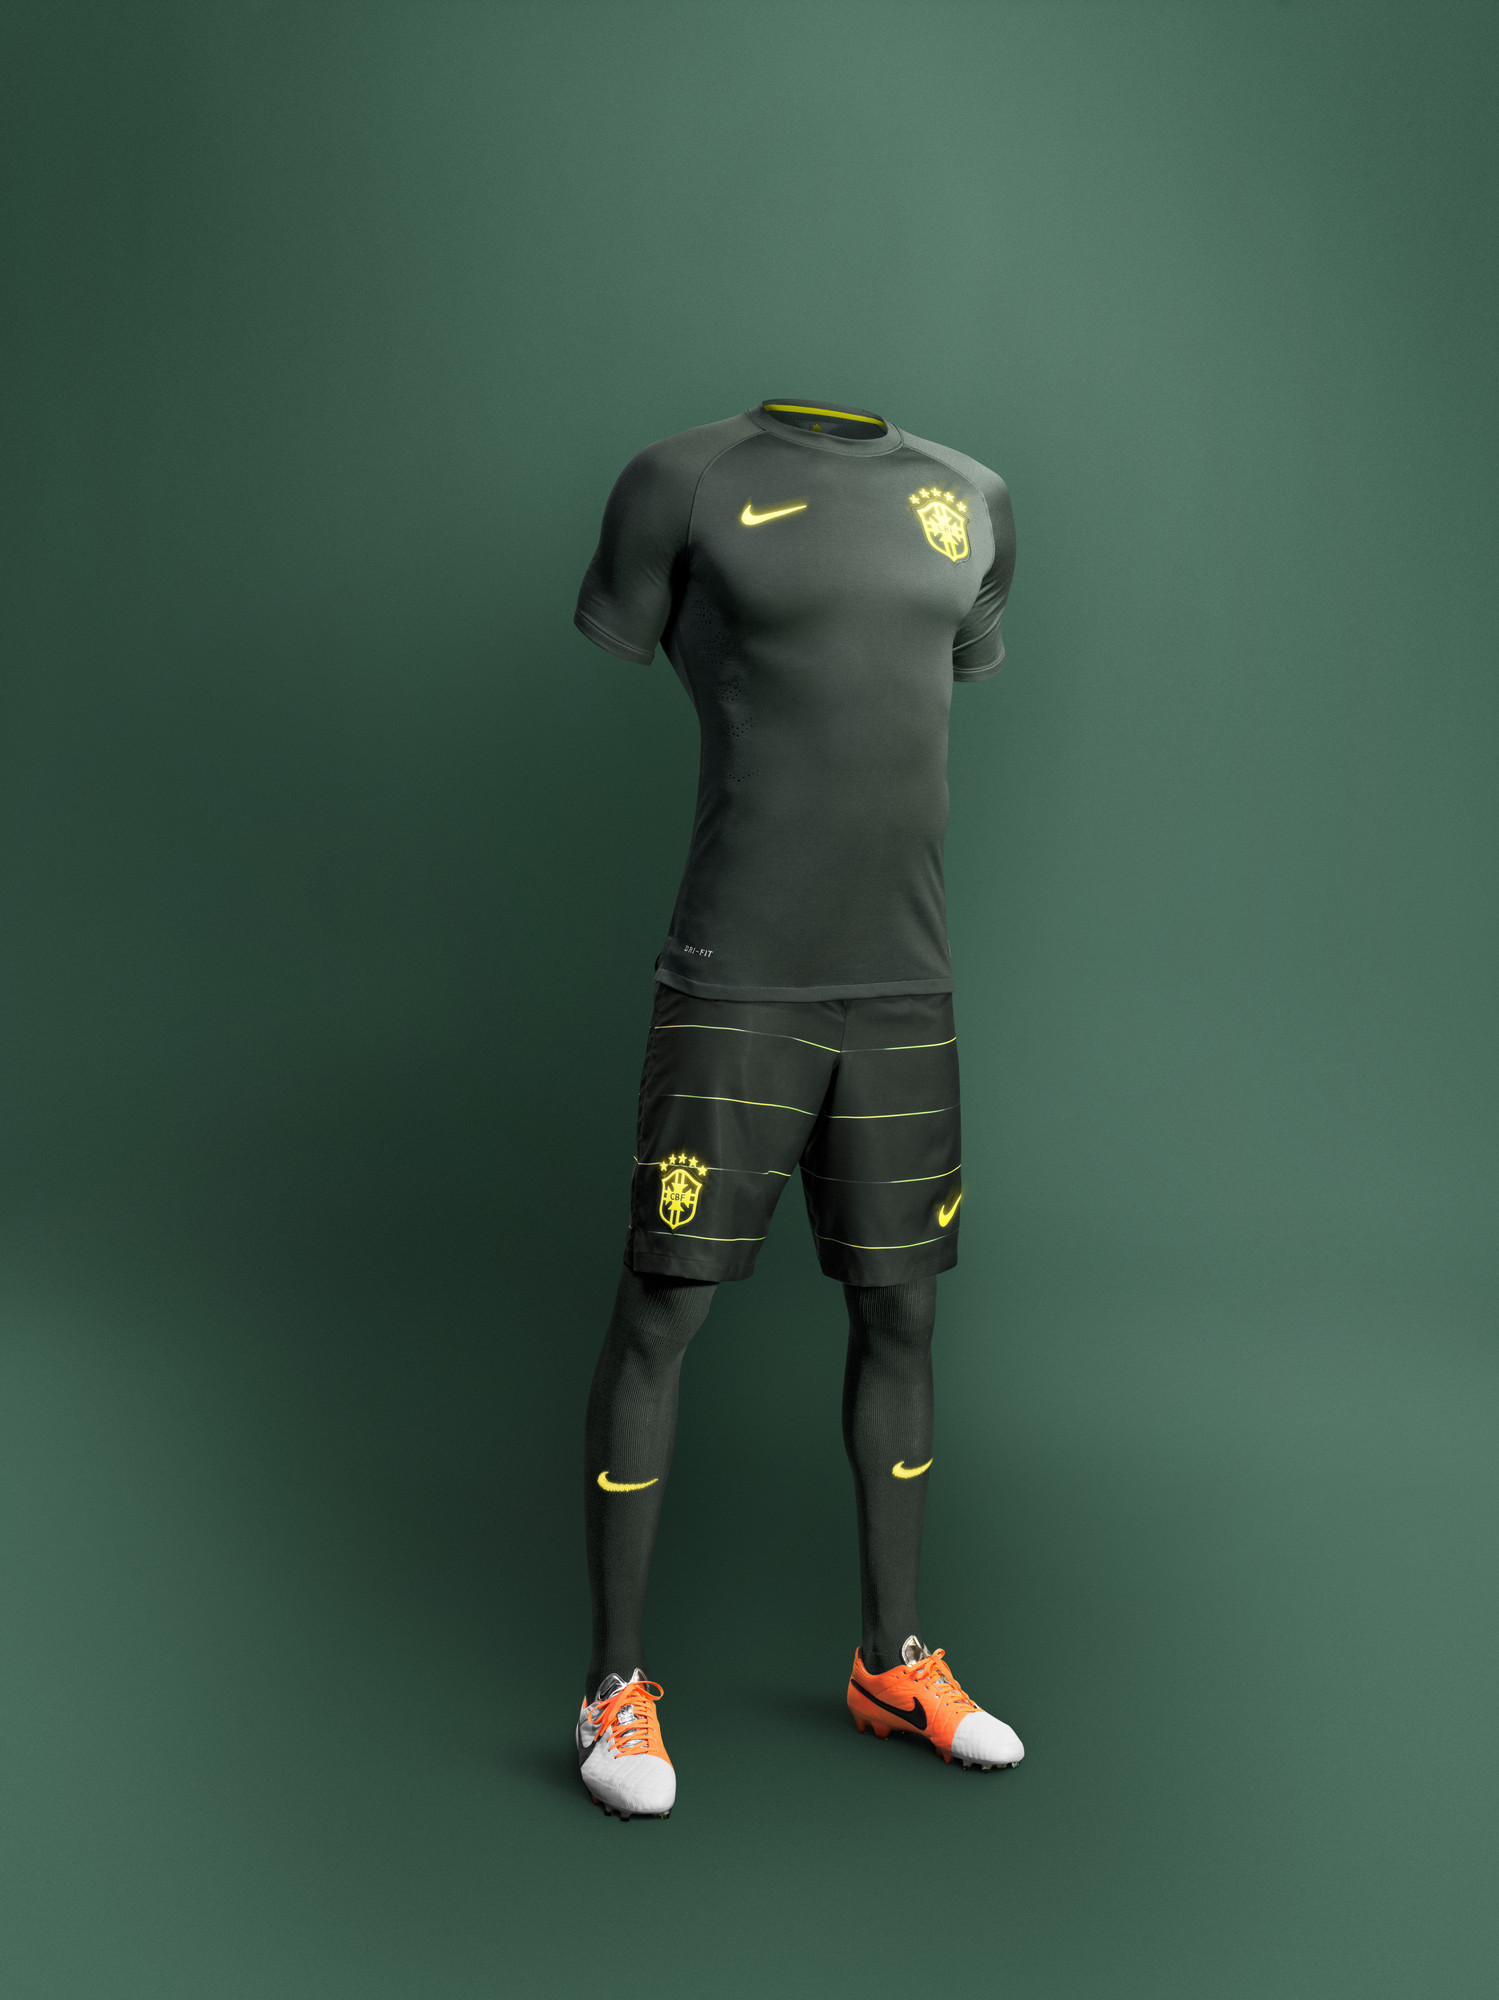 ナイキがブラジル代表チームのサードユニフォームを発表 | サッカーキング